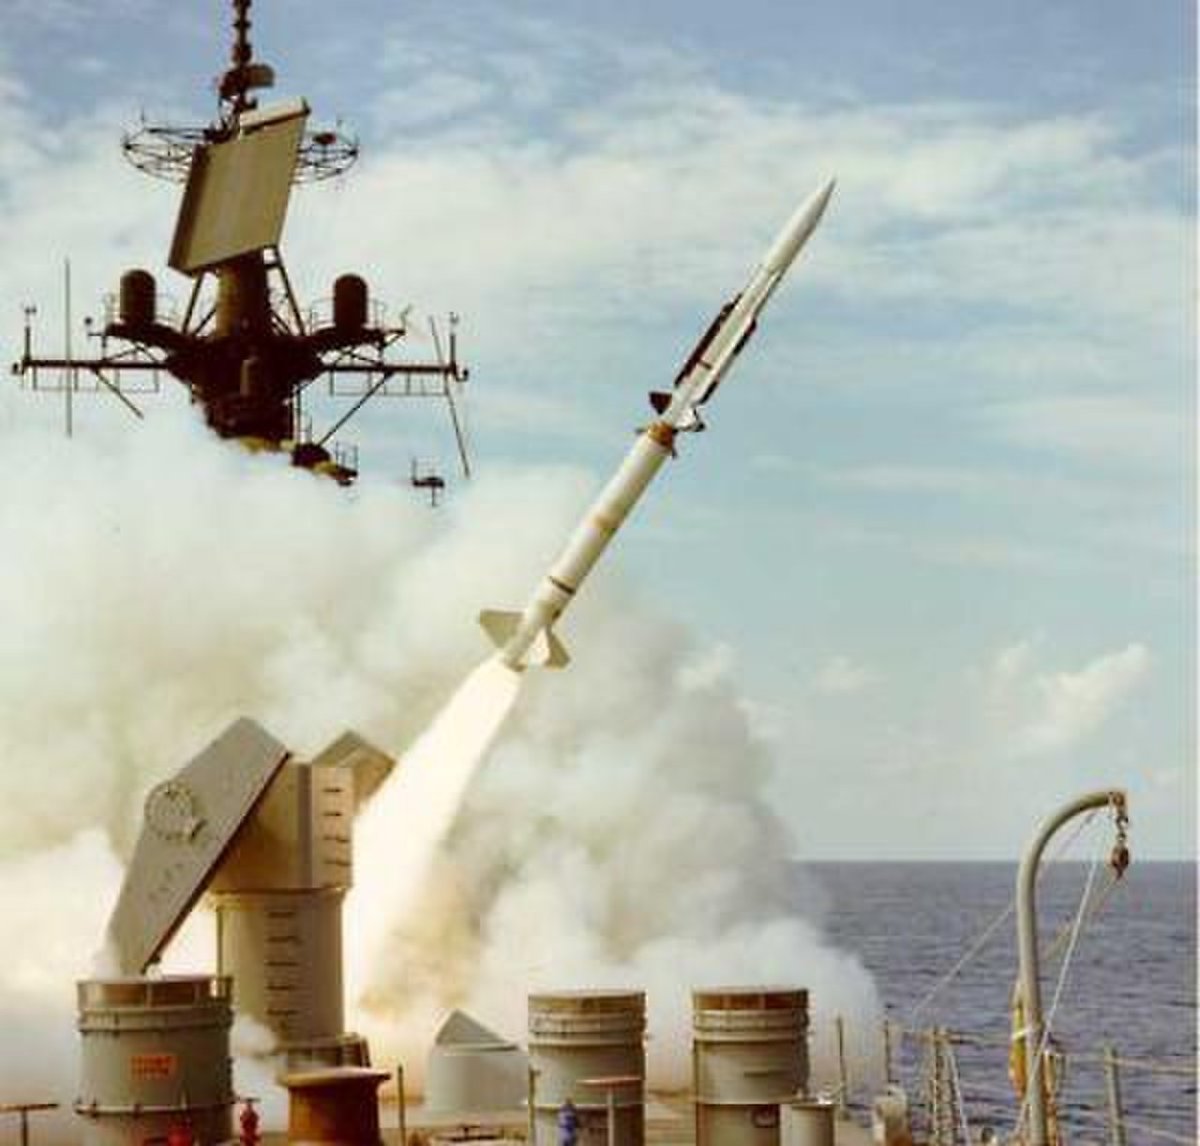 RIM-67 스탠더드 ER 함대공 미사일은 외관상 테리어 미사일과 비슷하지만 속도와 사거리가 대폭 향상되었다. <출처 : 미 해군>